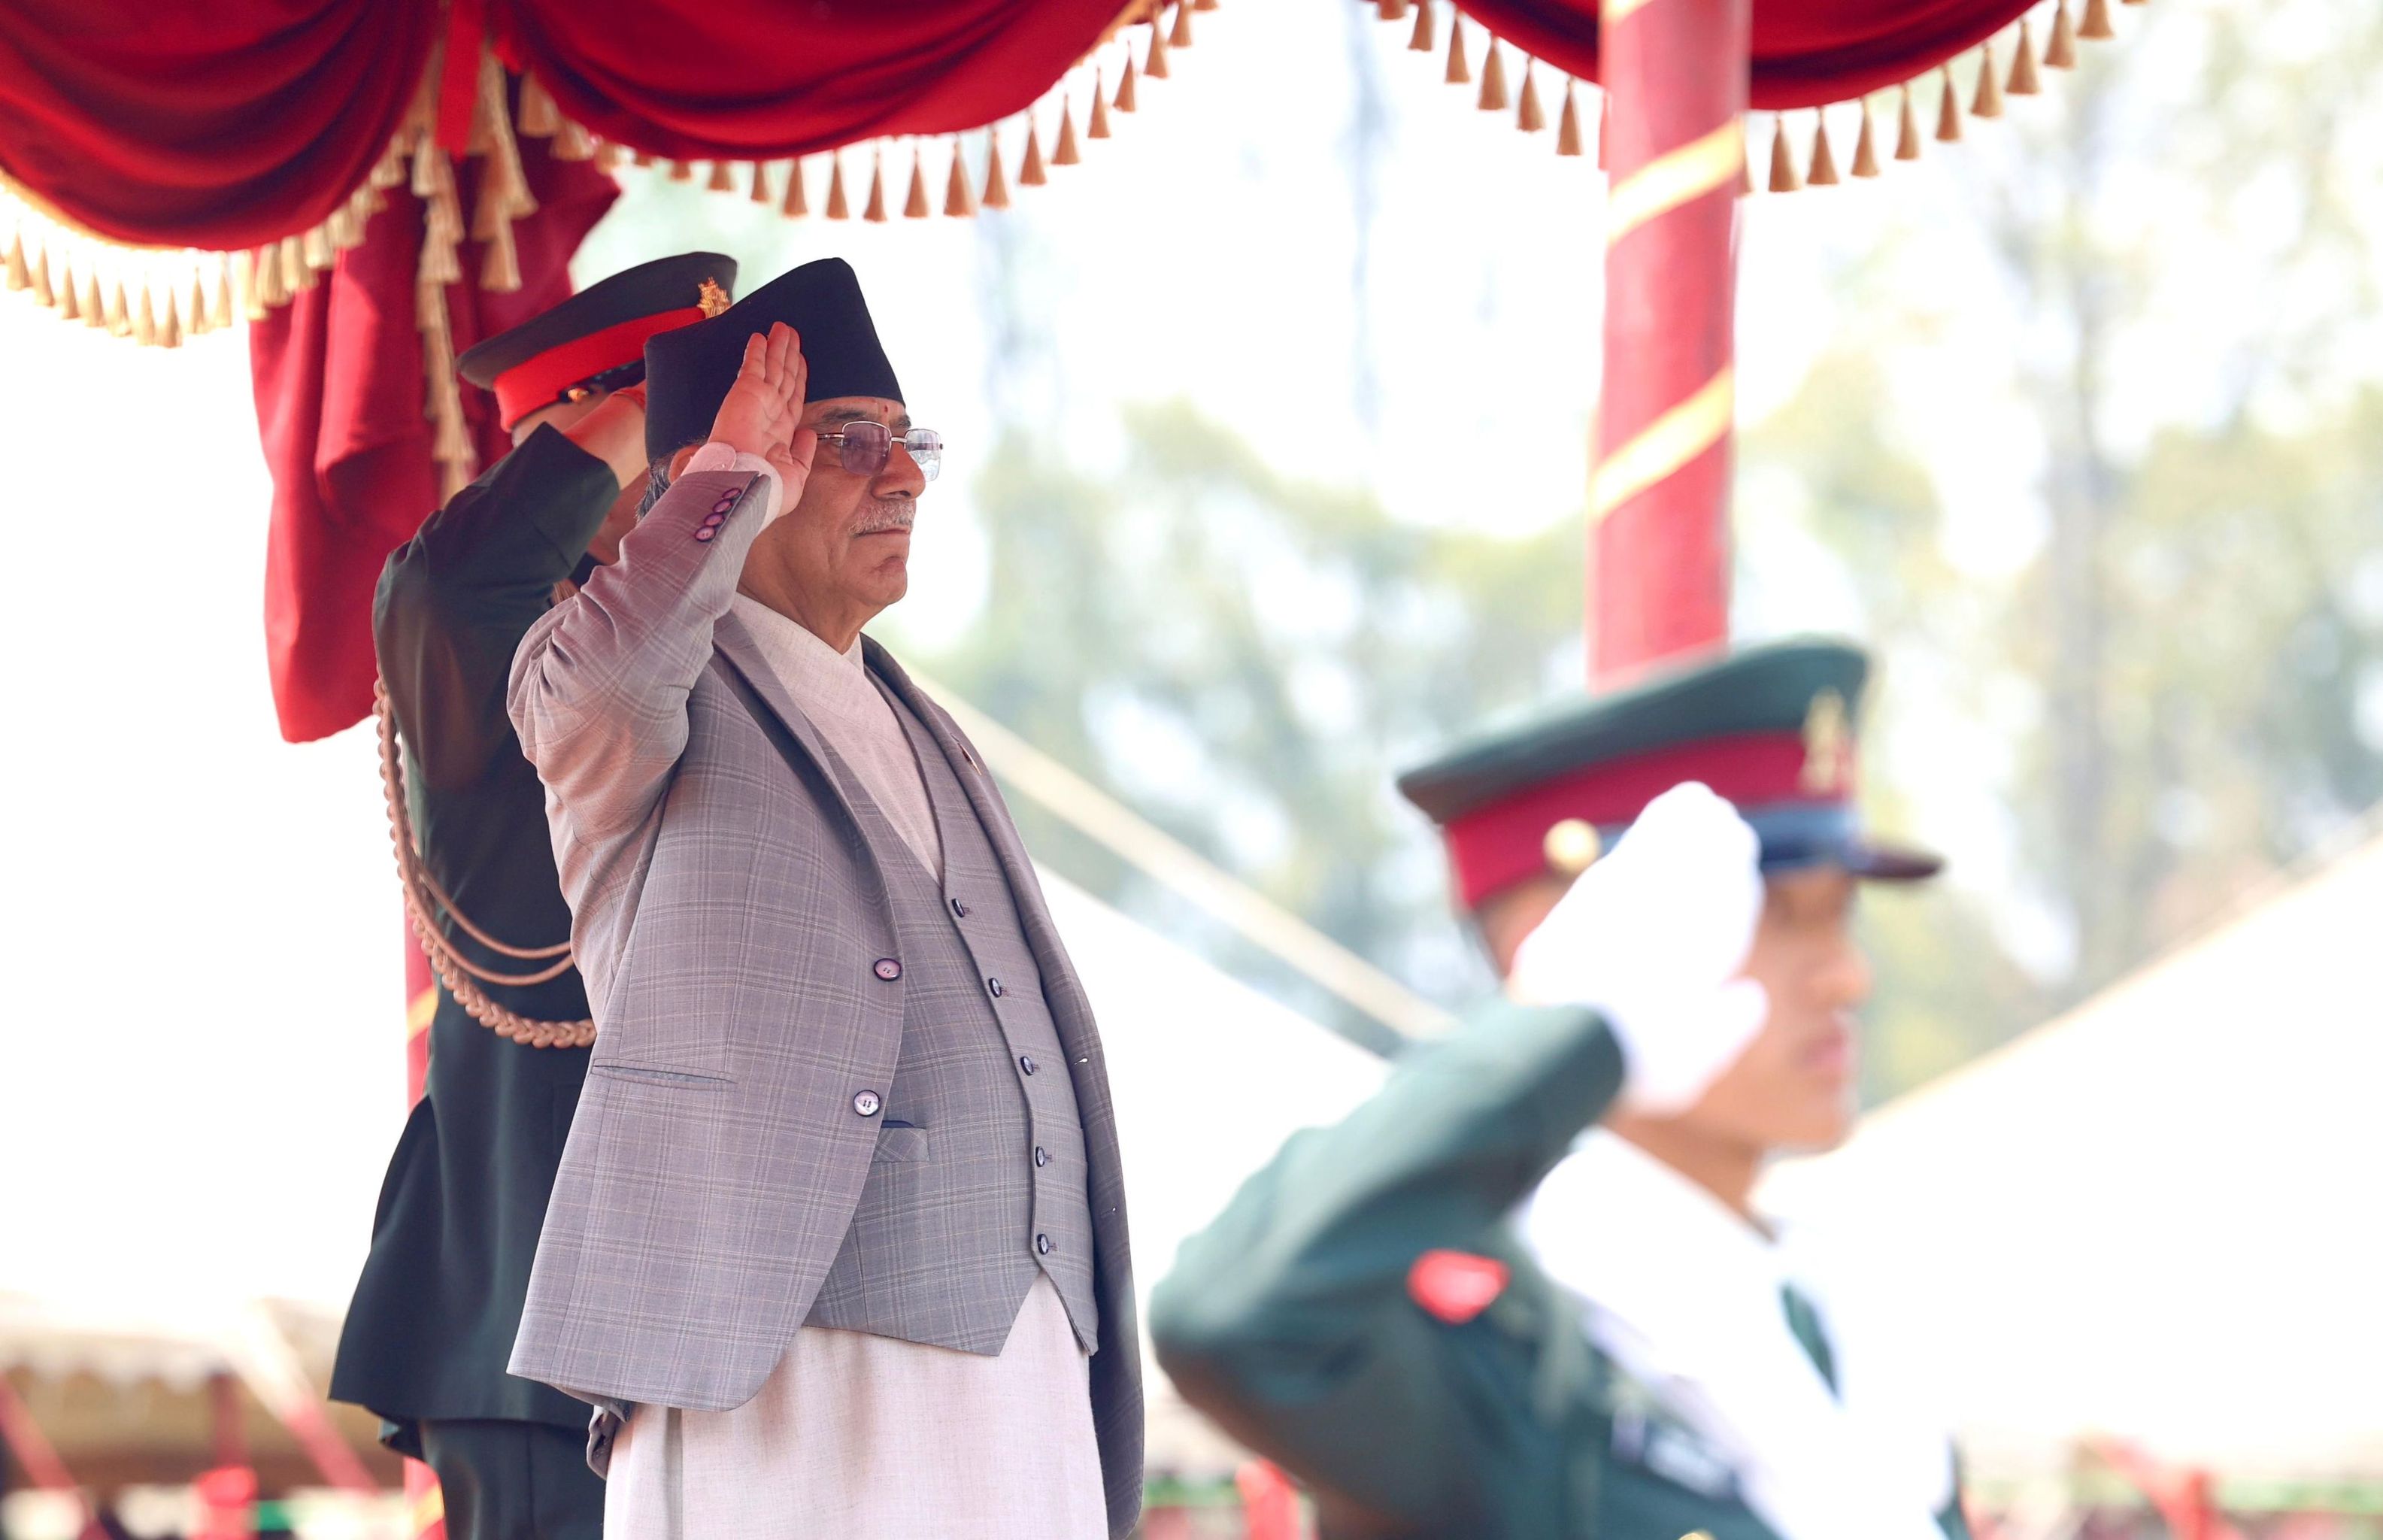 ‘शान्ति सैनिकहरूको देश’ का रूपमा परिचित गराउन नेपाली सेनाको योगदान महत्त्वपूर्ण छ :  प्रधानमन्त्री